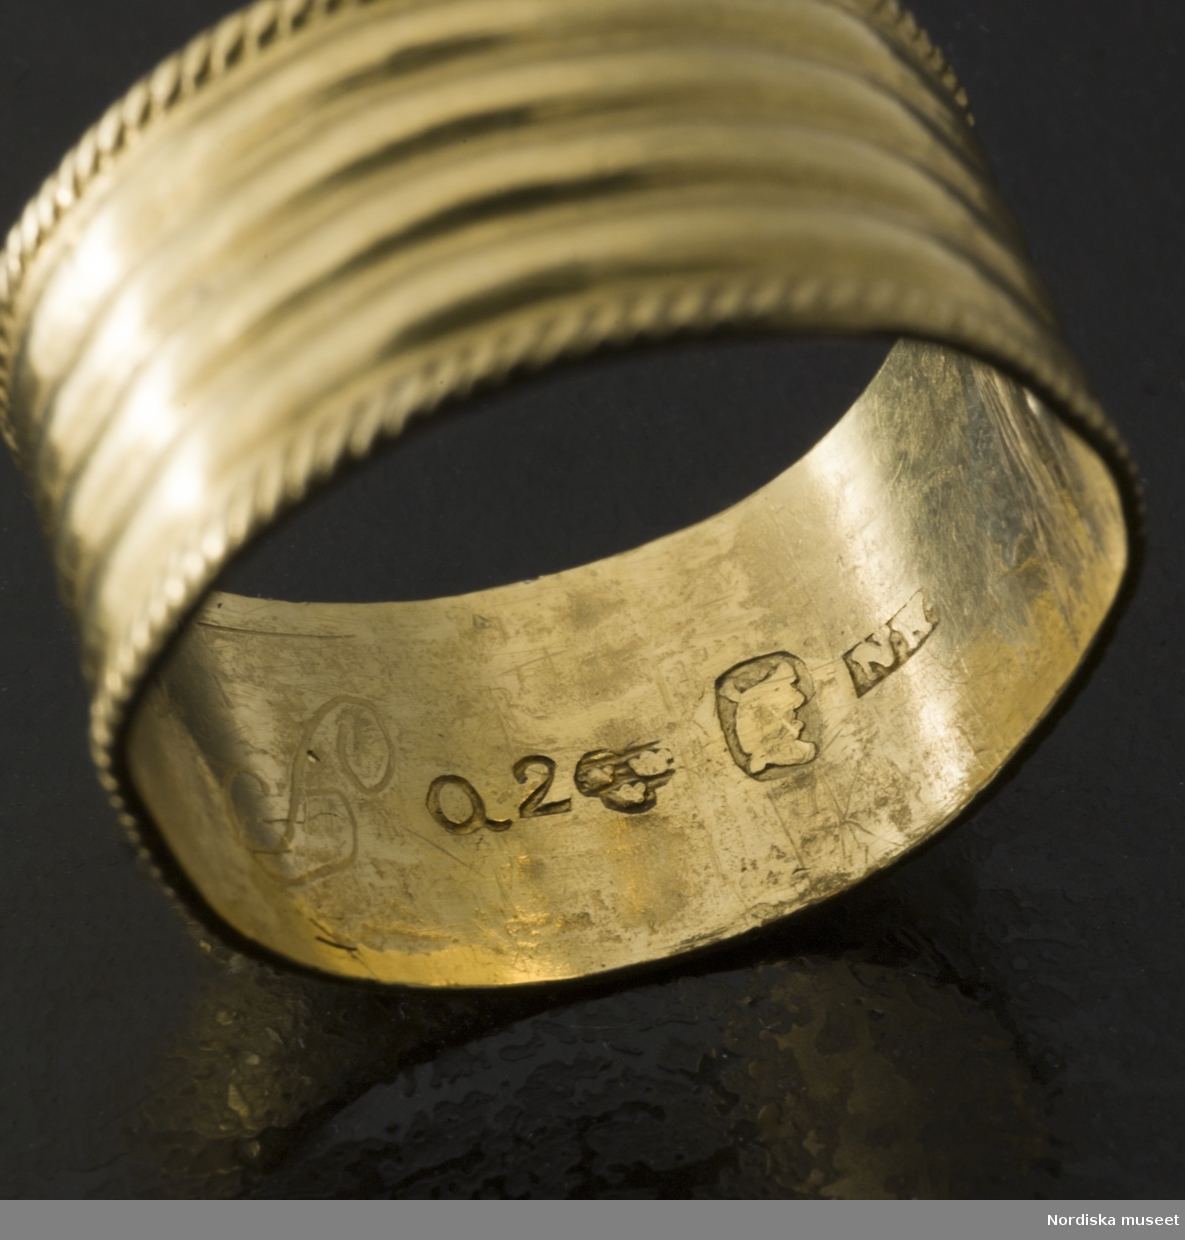 Smycke. Ring. Stämplad guldring från 1798. Föremål ur Nordiska museets samlingar :invnr.NM.0200423,  fotograferad för utställningen Smycken med öppningsdatum 2012-09-14.